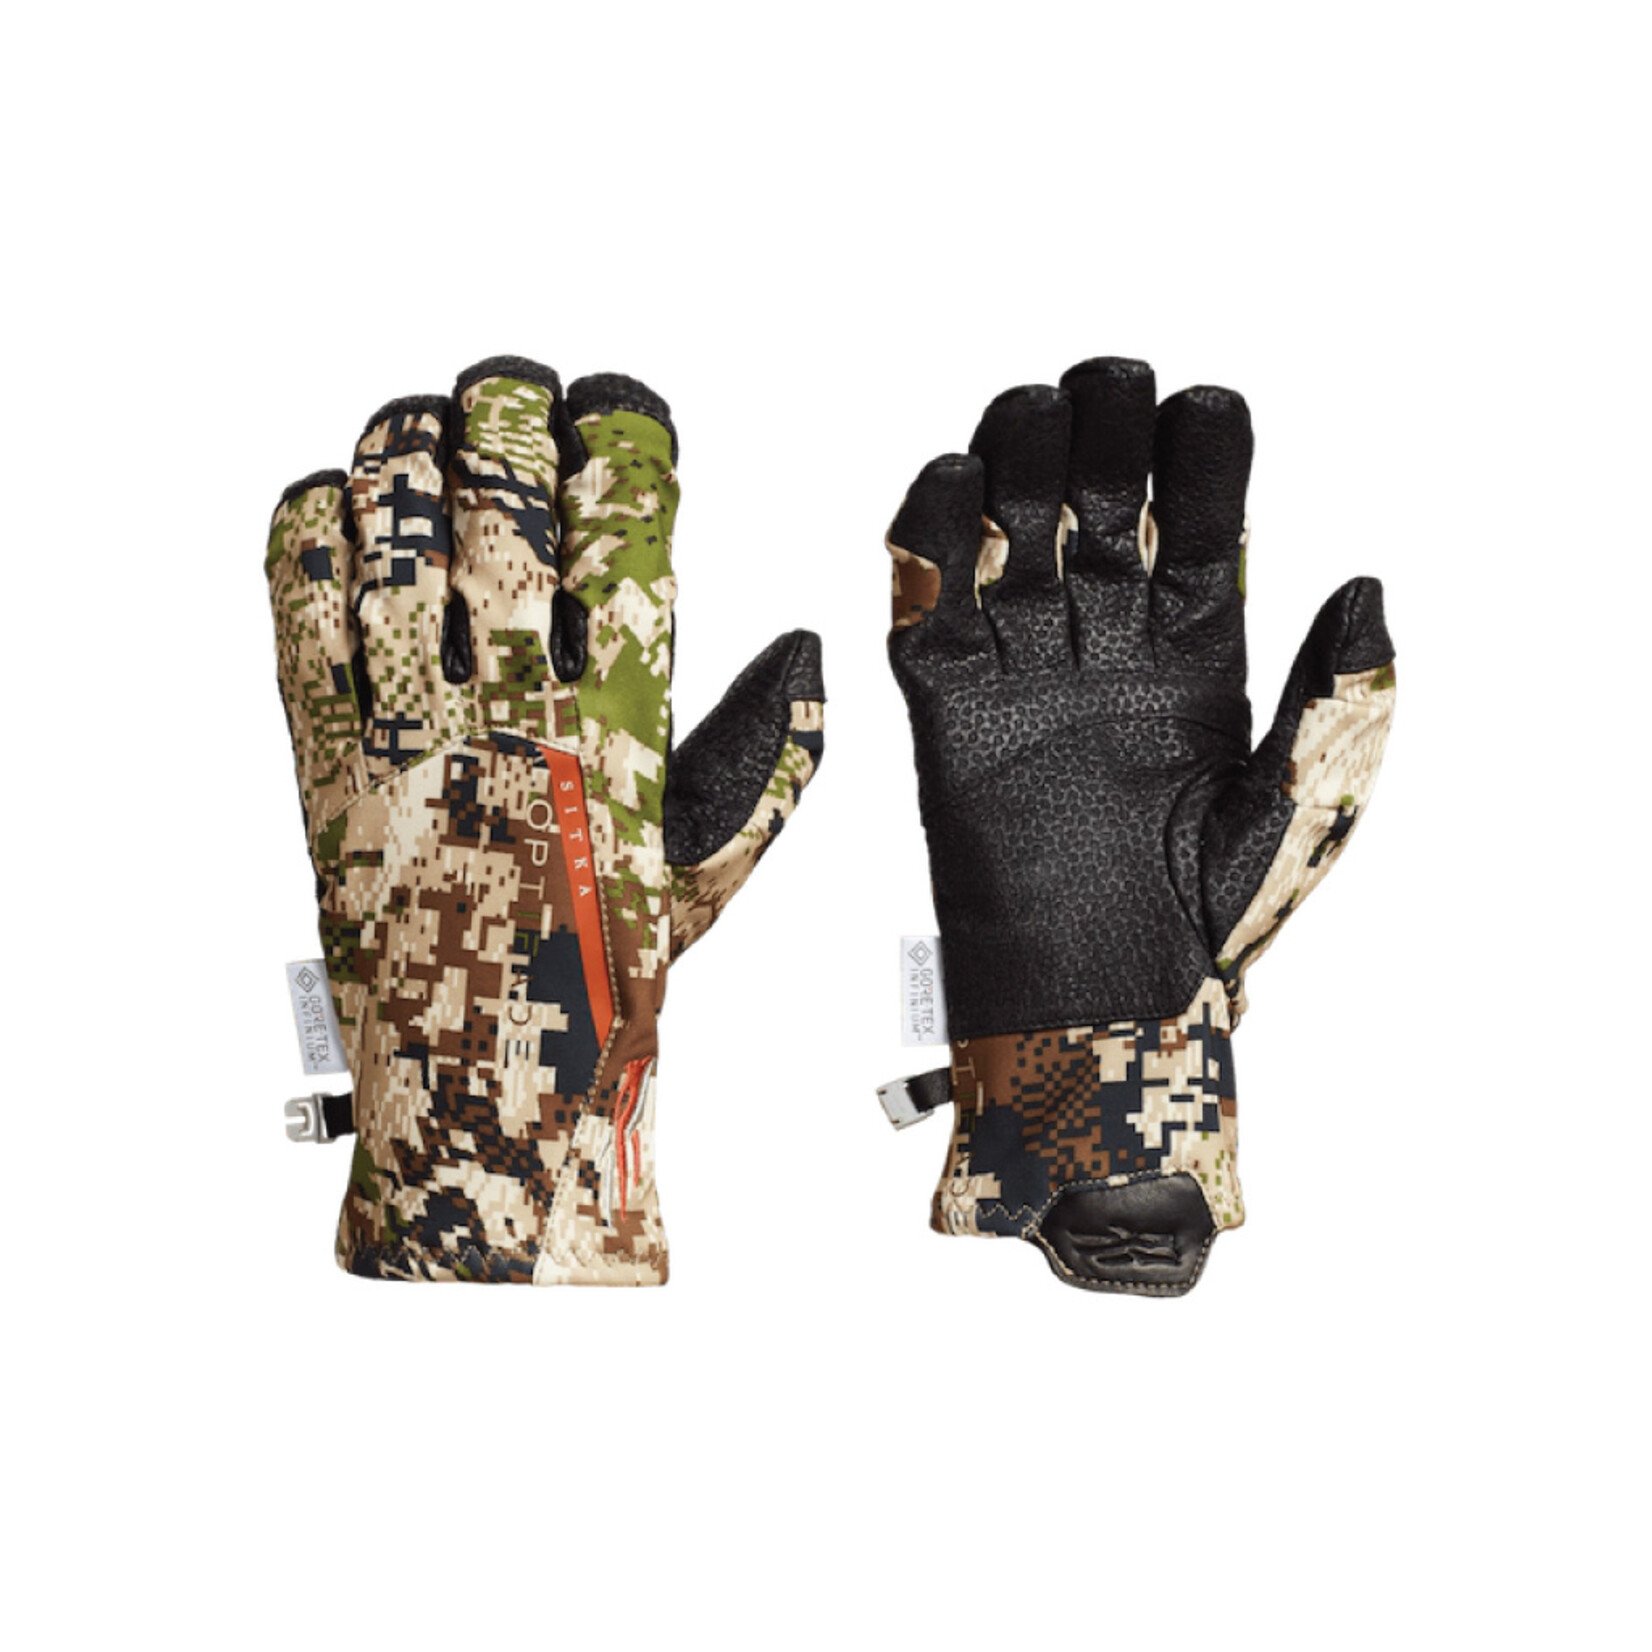 Sitka Gear Mountain Glove